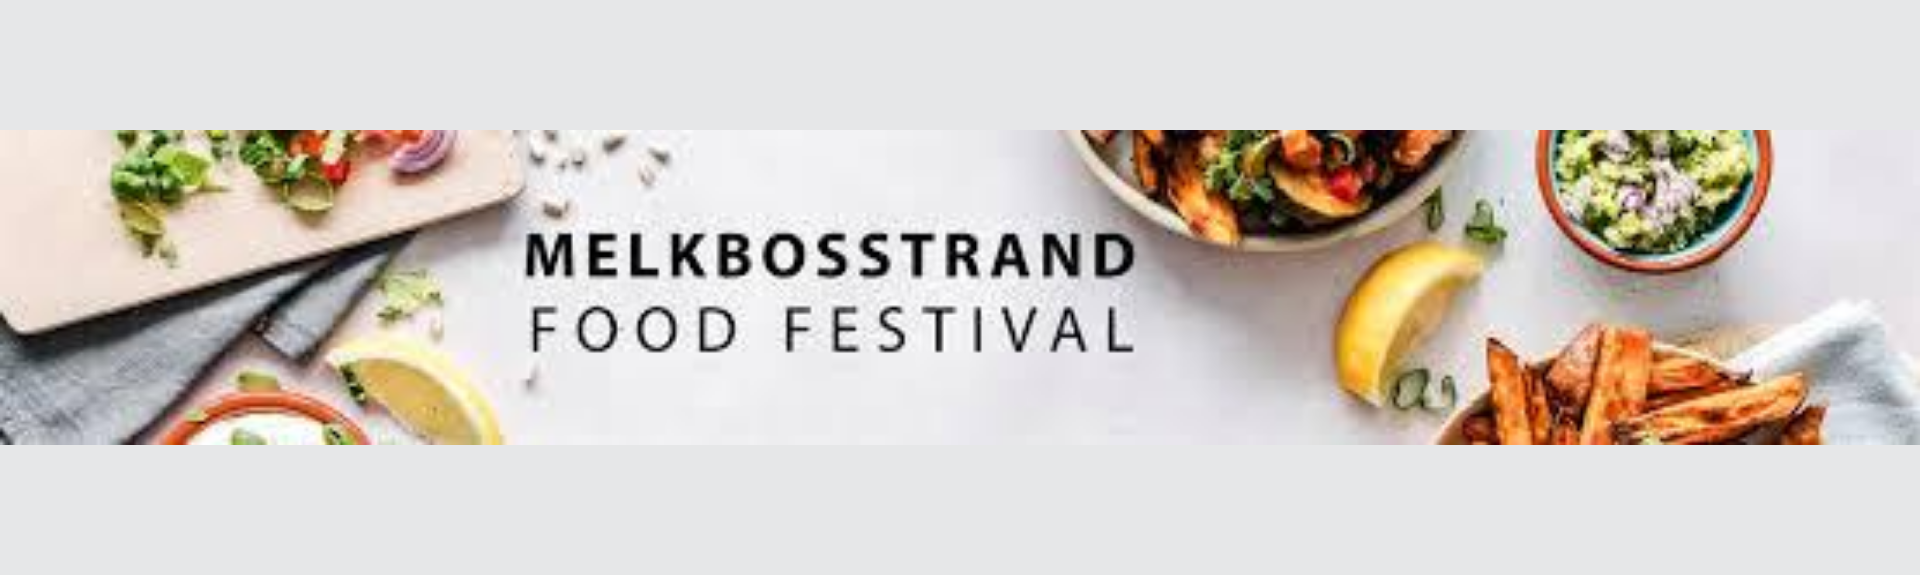 Melkbosstrand Food Festival